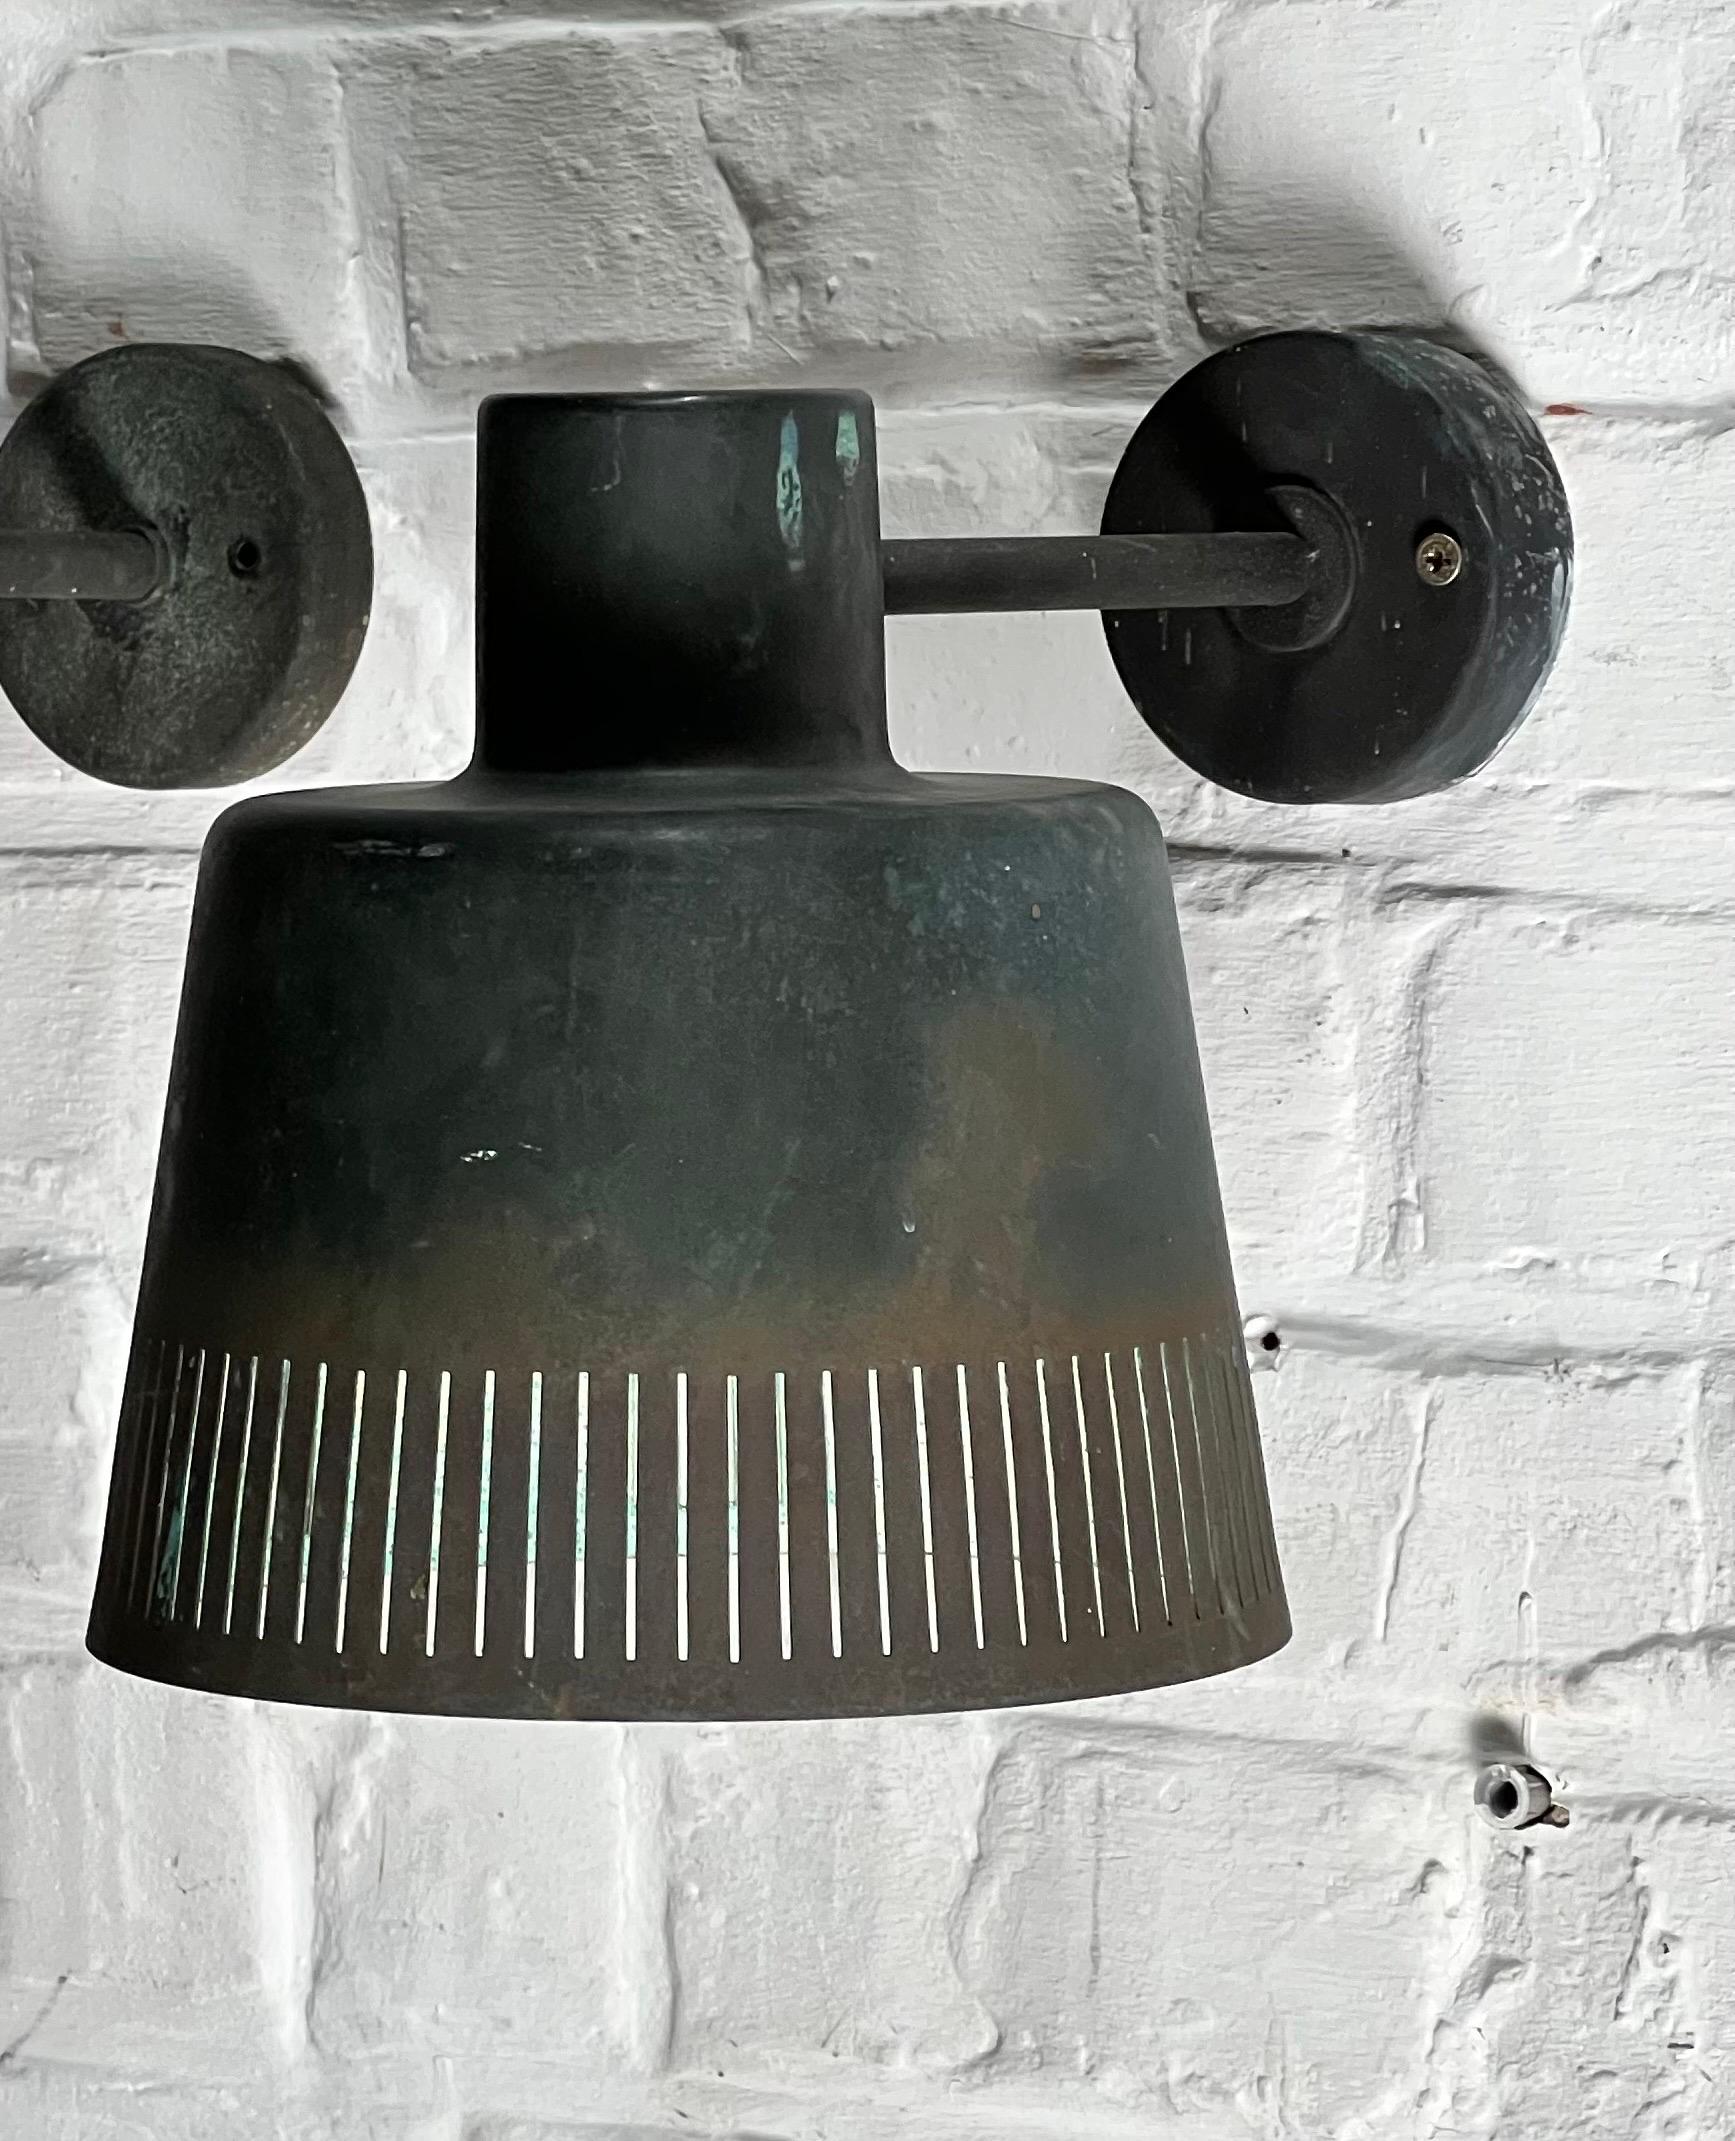 Seltene Kupferlampe des schwedischen Architekten und Designers Hans Bergström. Dies ist sehr schwer zu finden. Es kann draußen verwendet werden, wie es für 70 Jahre verwendet wurde, aber Sie können es drinnen verwenden und es kann auf den Kopf